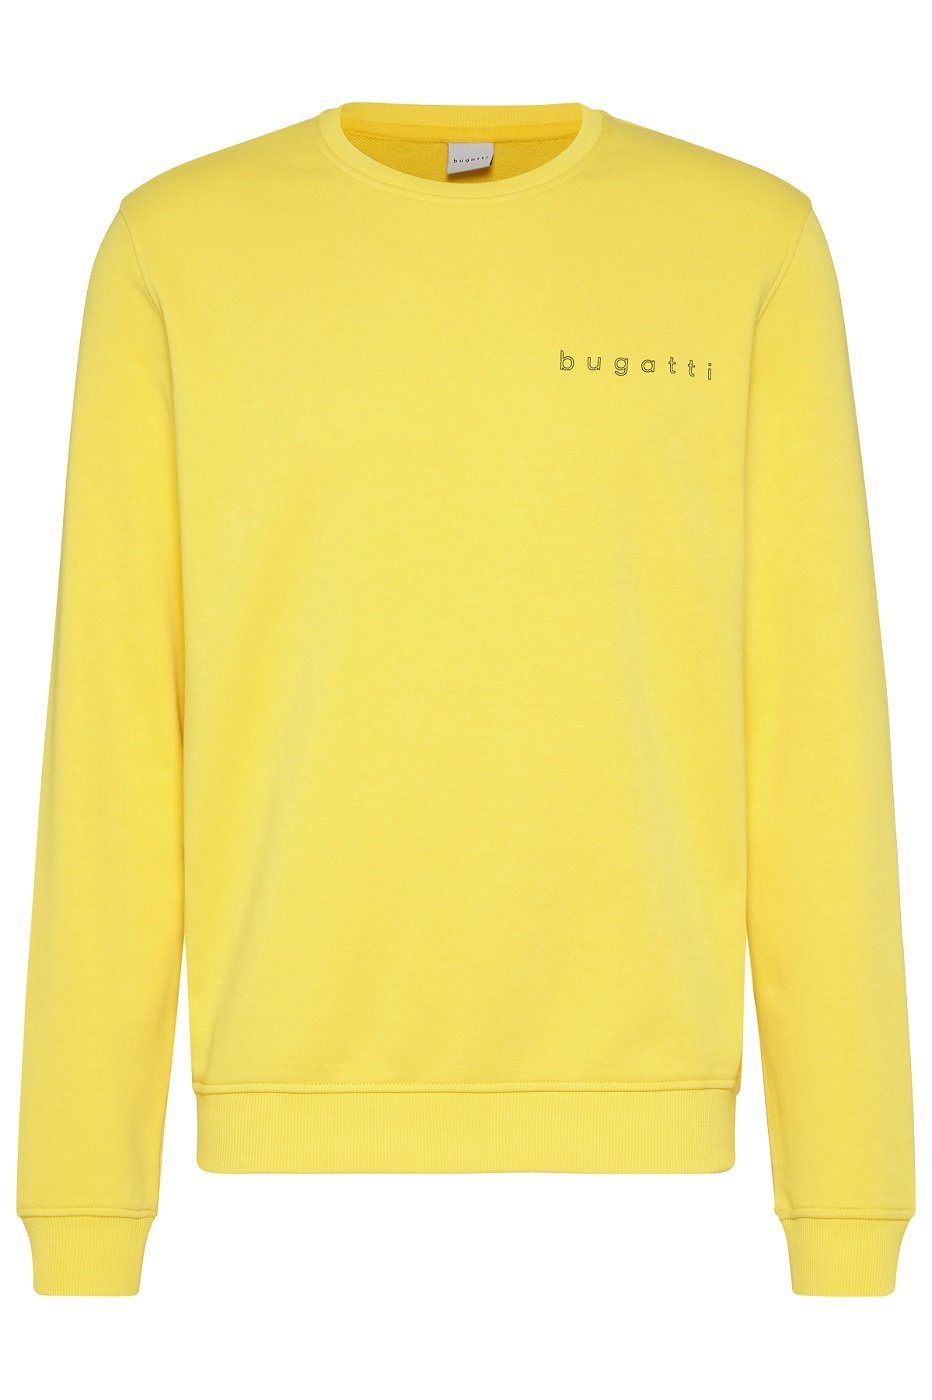 bugatti Sweatshirt 8650-35070 Hoher Anteil an hochwertiger Baumwolle, Modern Fit Gelb (620)